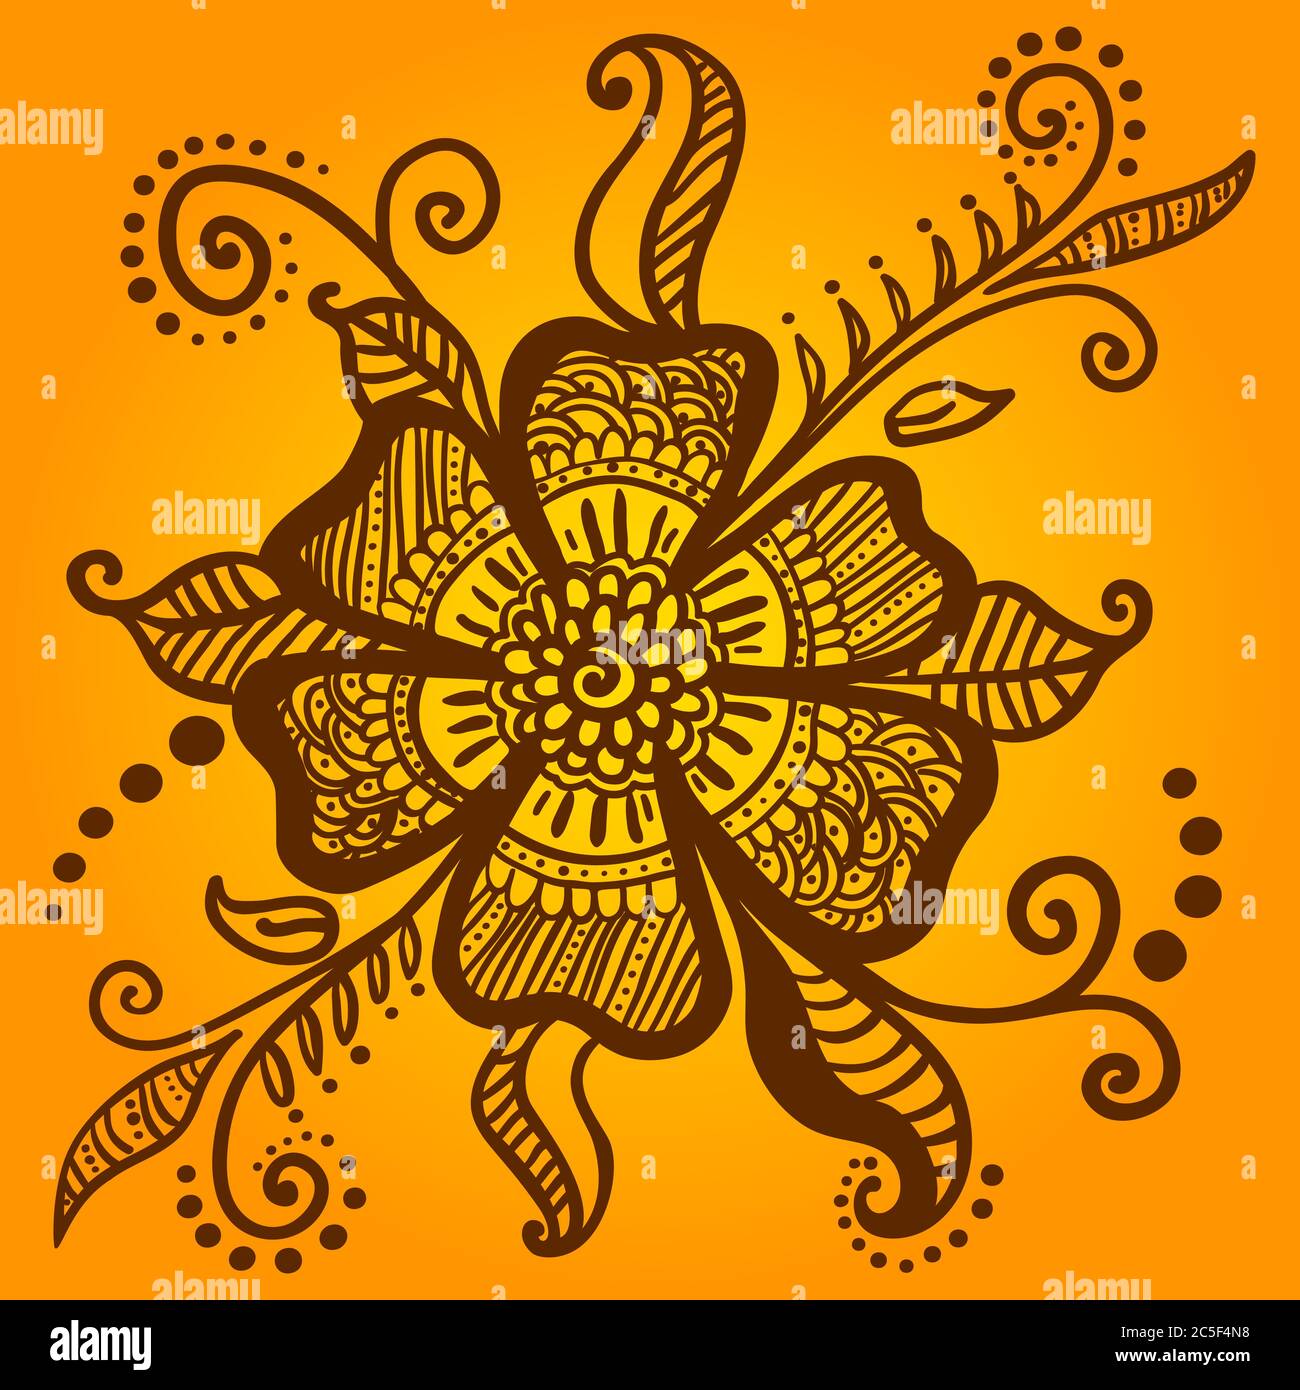 Abstrakte Blume für Henna Mehndi temporäre Tätowierung. Vektorgrafik. Große schöne Blume auf gelbem und orangefarbenem Hintergrund. Traditionelle indische Weddi Stock Vektor